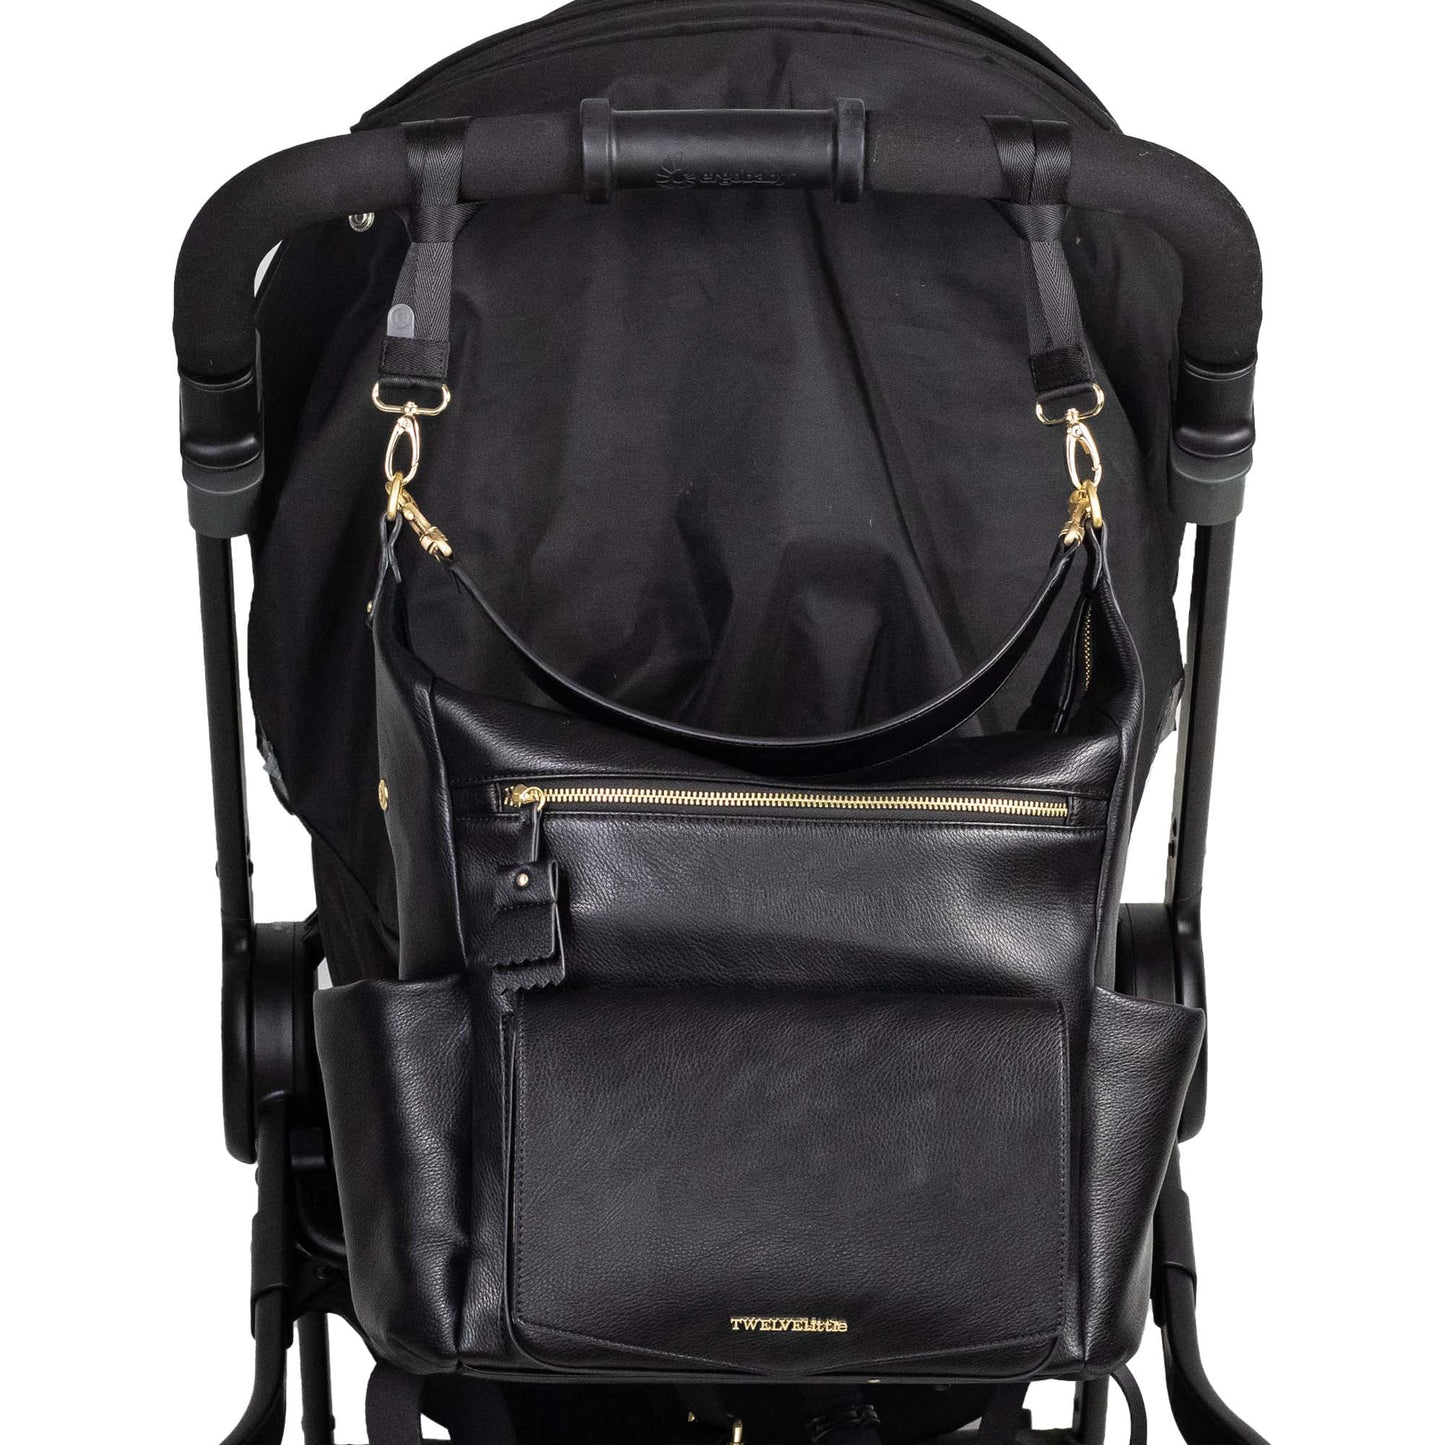 PEEK A BOO HOBO  backpack |תיק גב |שחור